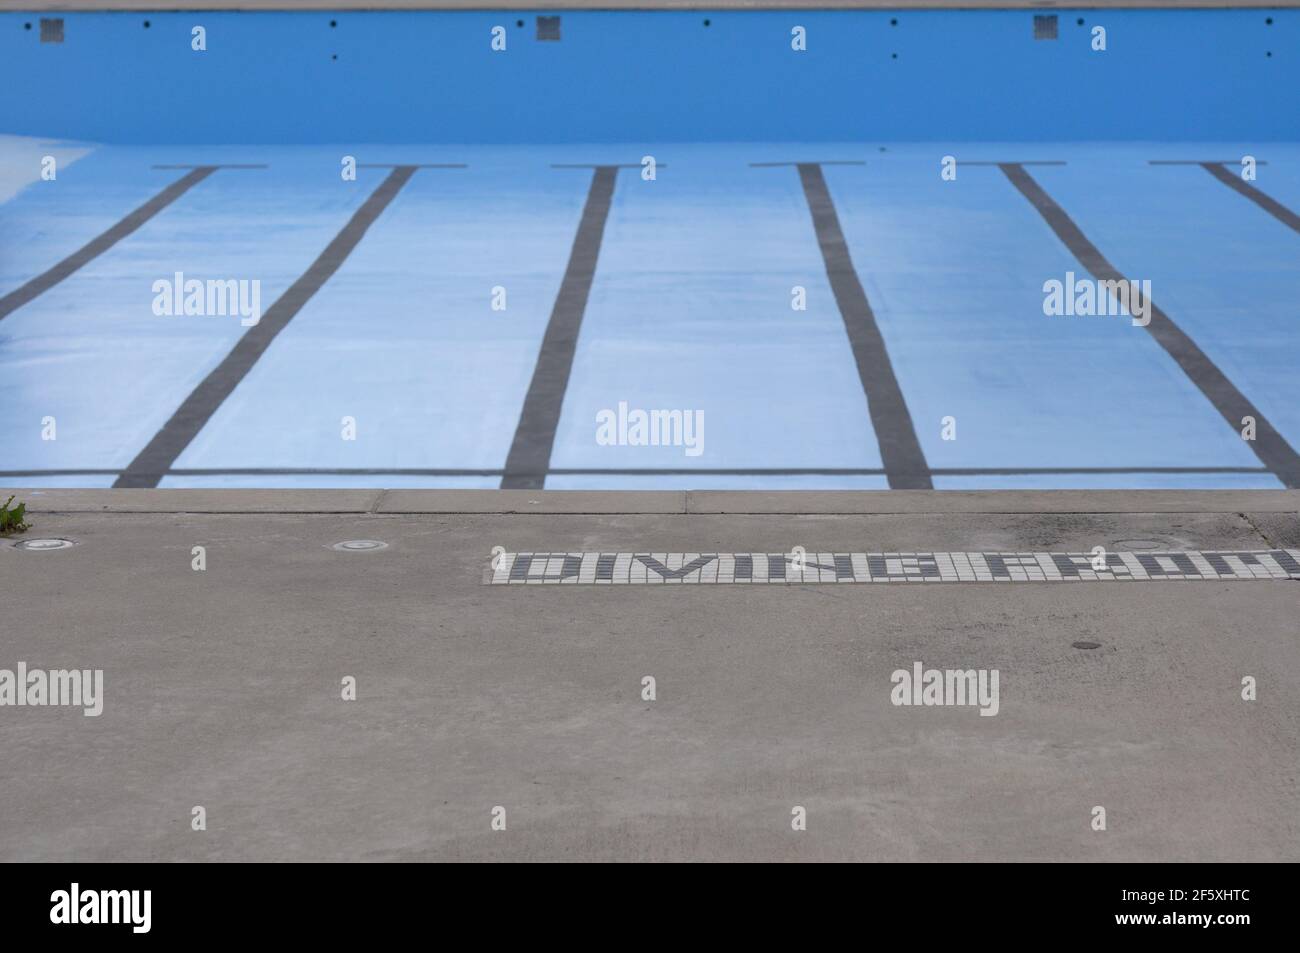 Freibad, ohne Wasser, mit schwarzer Fahrbahnmarkierung sichtbar, Betondeck Stockfoto